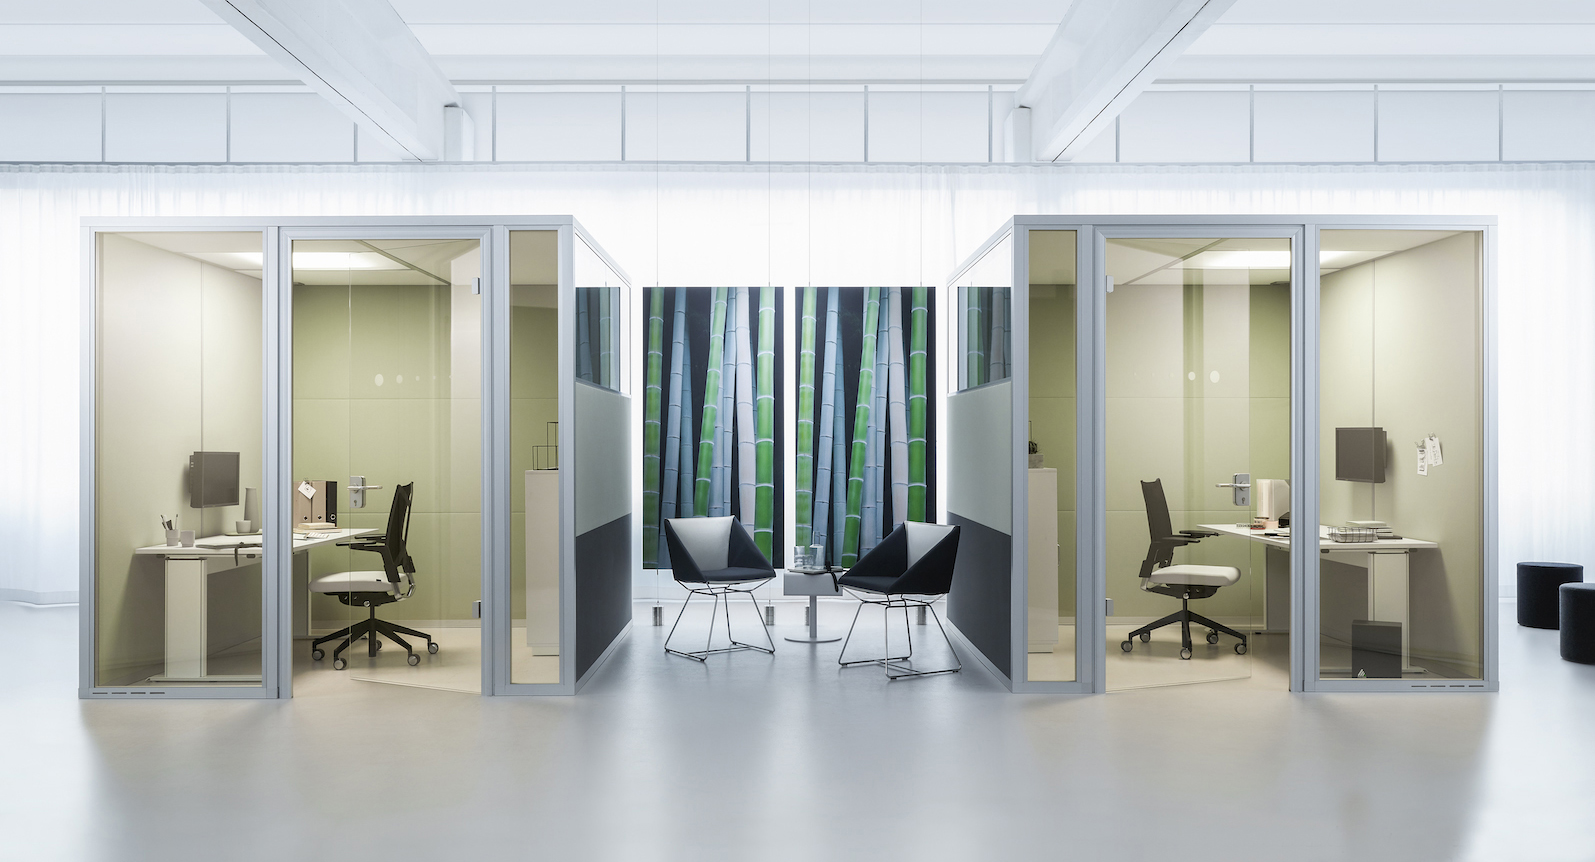 Raum im Raum Absorber Decato dp50 Doppelkabine als Akustiklösung für das Büro